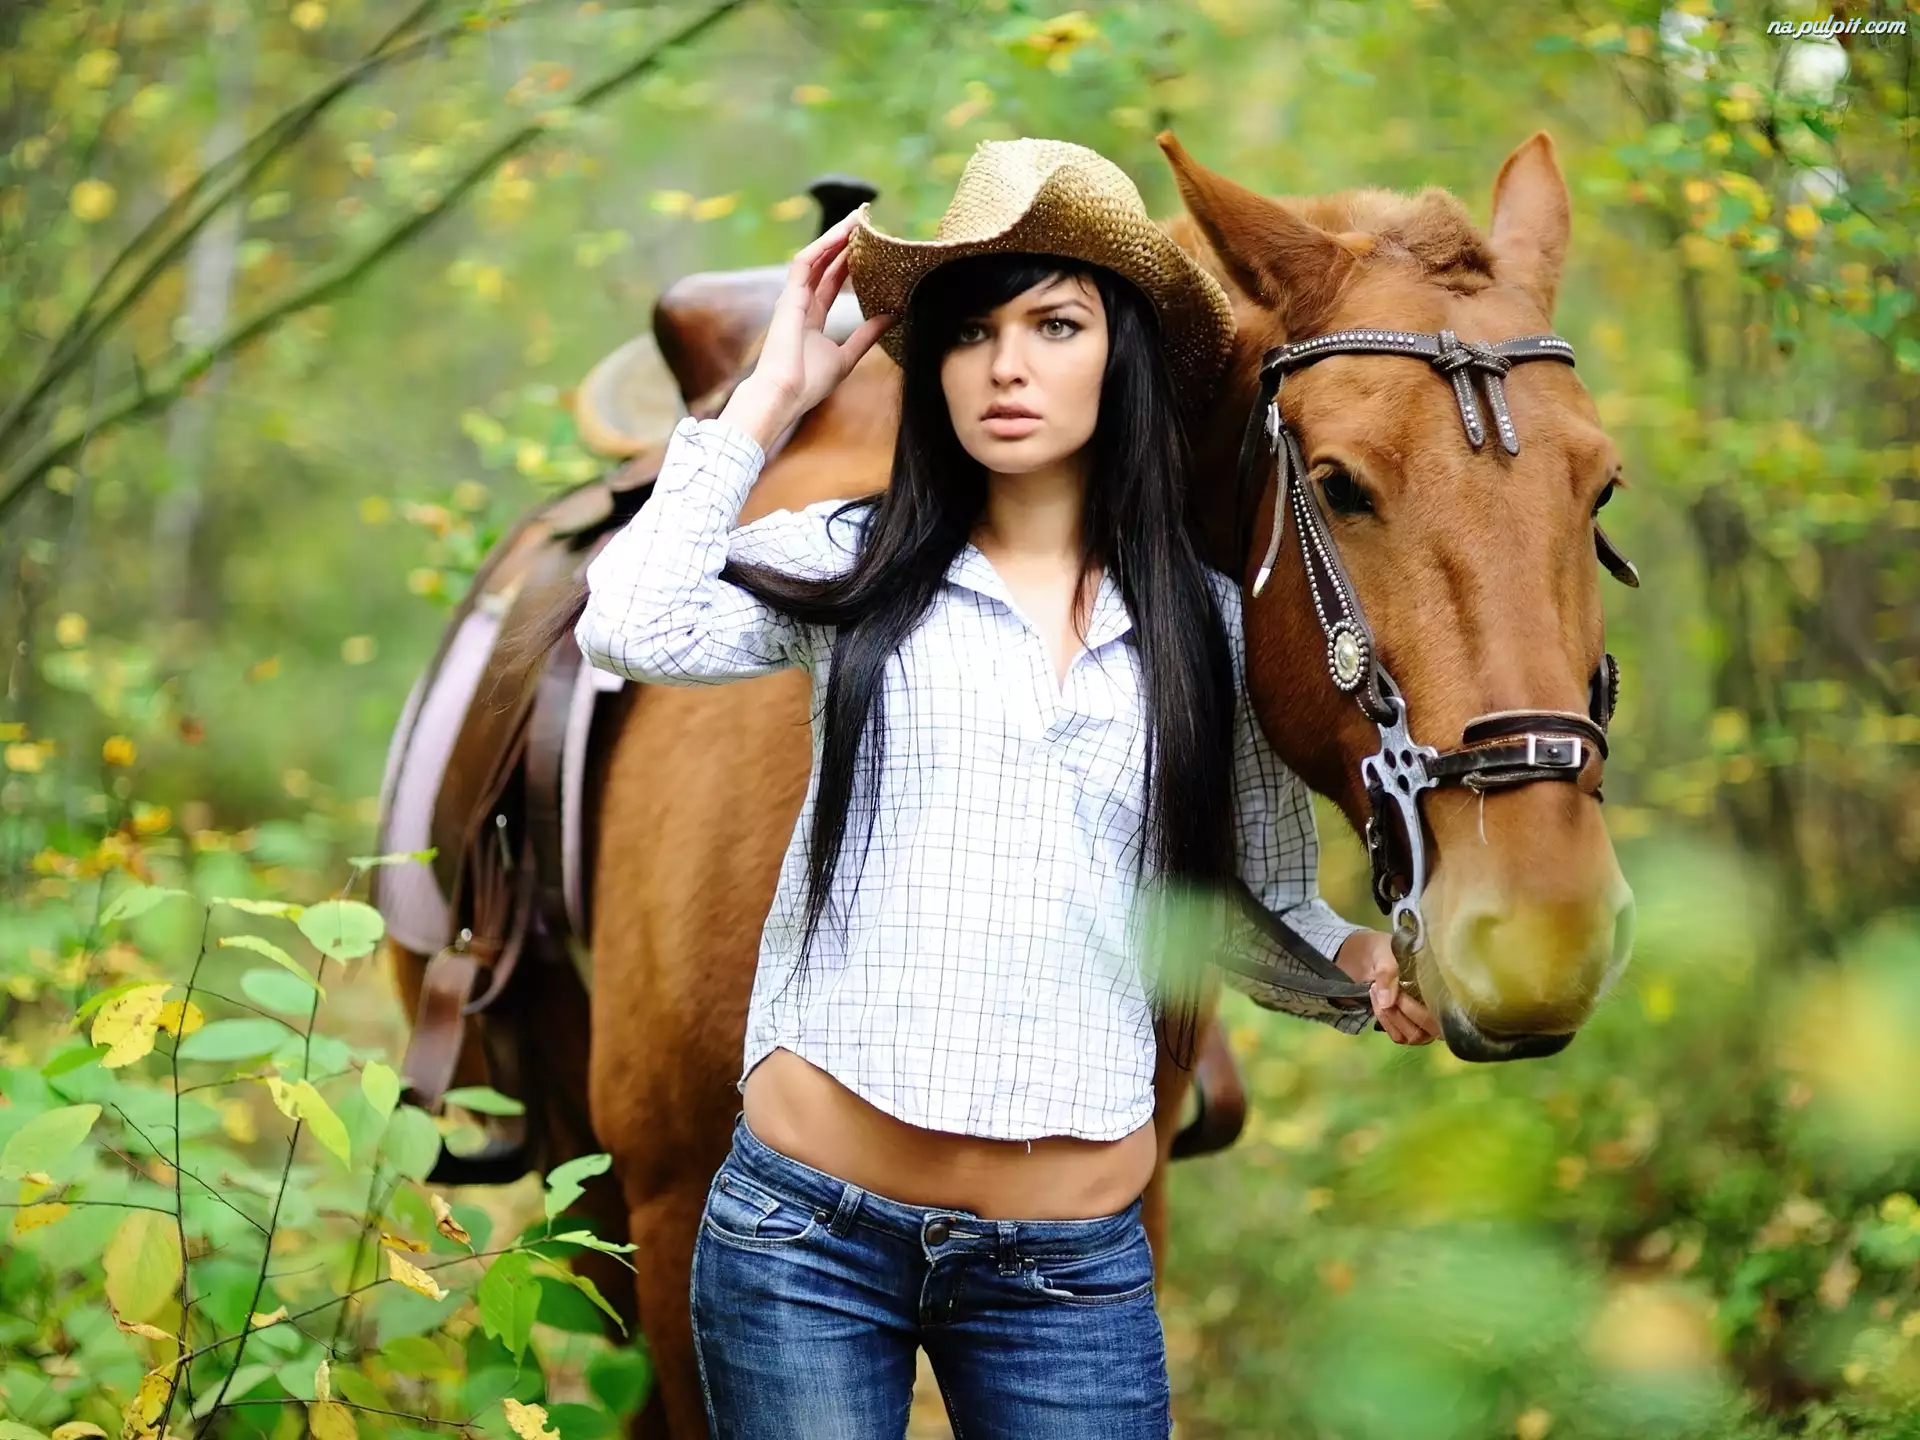 Девочка с лошадкой. Девушка с лошадью. Девушка на коне. Девочка на лошади. Конные прогулки и красивые девушки.